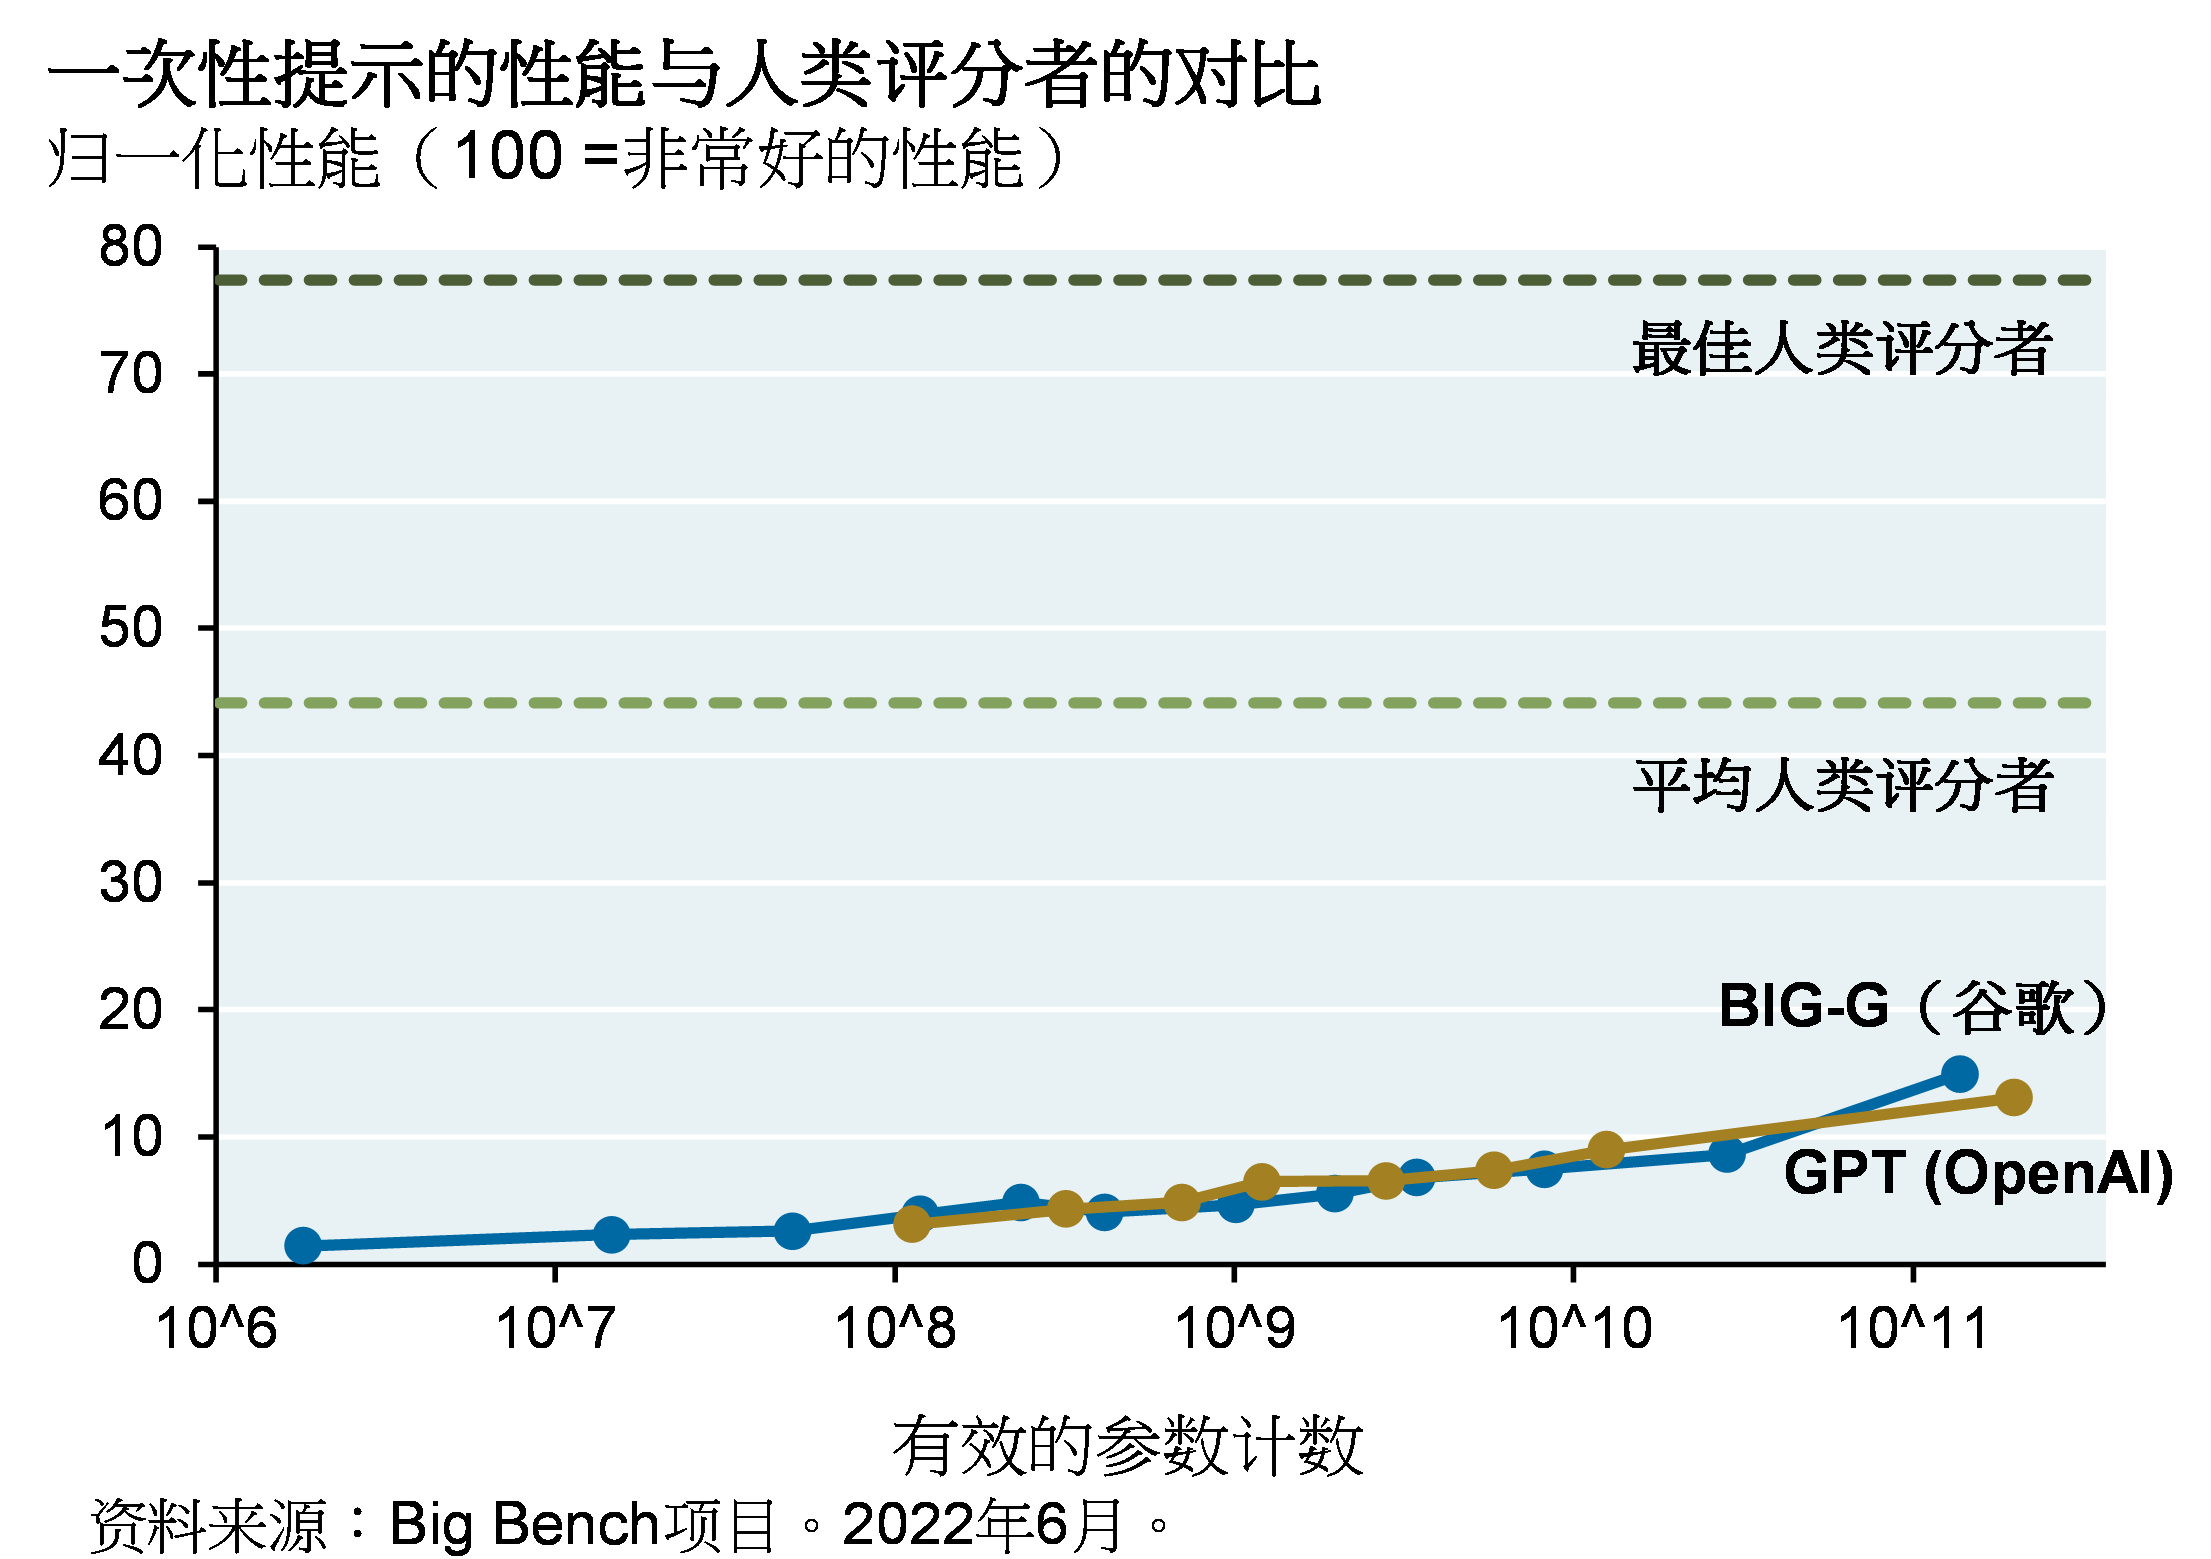 线图显示谷歌的BIG-G和OpenAI的GPT在编程和JSON任务上的一次提示获得的归一化性能（从0到100，100代表非常好的性能），并将该评分与大众及最佳人类评分者性能进行比较。拥有超过100万亿个有效参数的BIG-G和GPT都获得了低于15的评分，而大众人类评分者得分45左右，最佳人类评分者则接近80分。